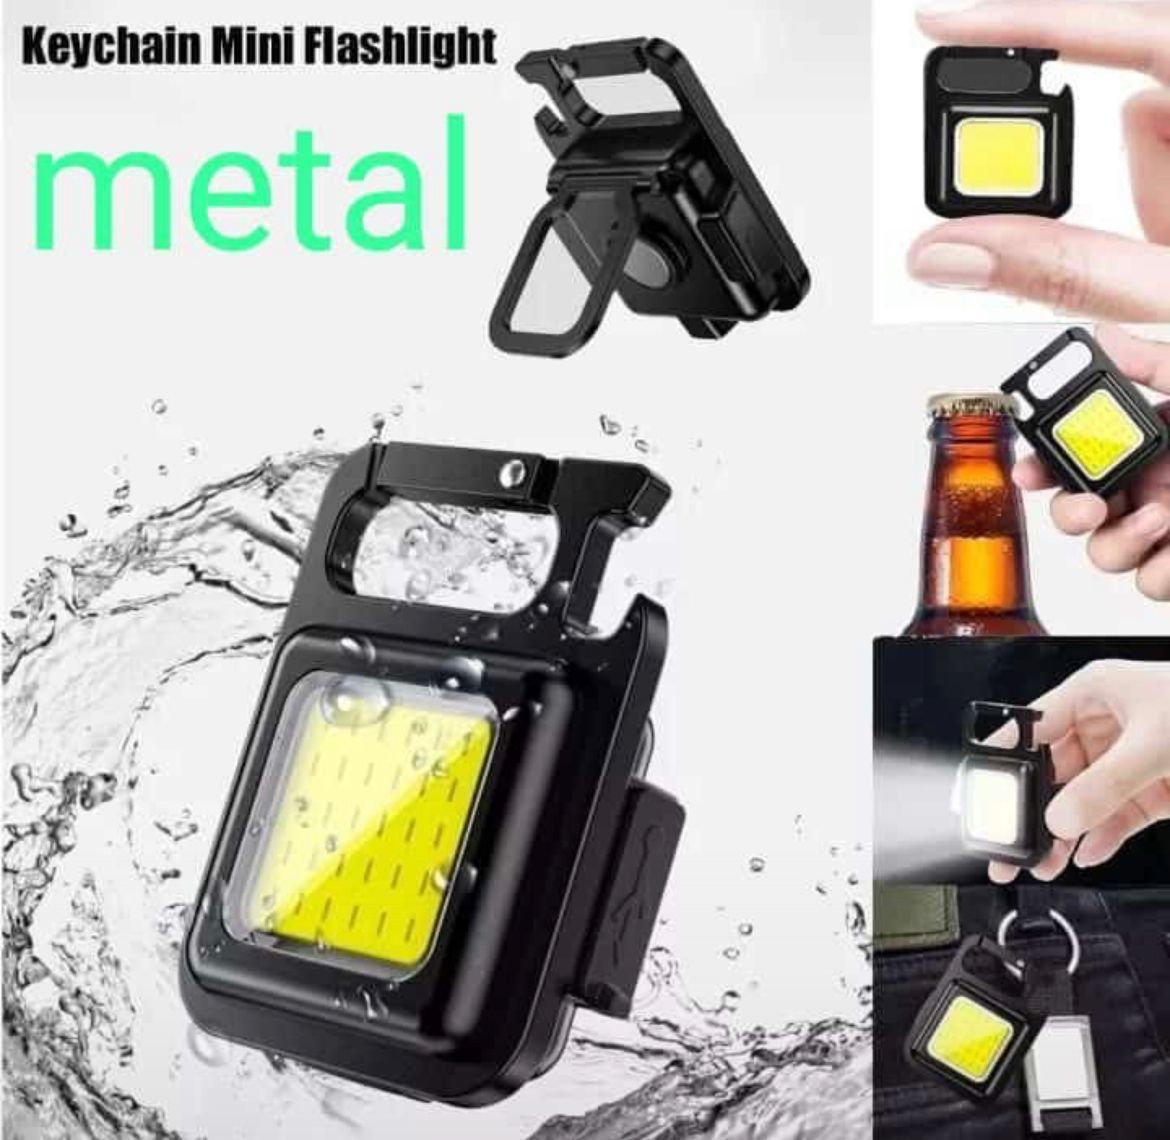 Metal keychain mini flashlight 